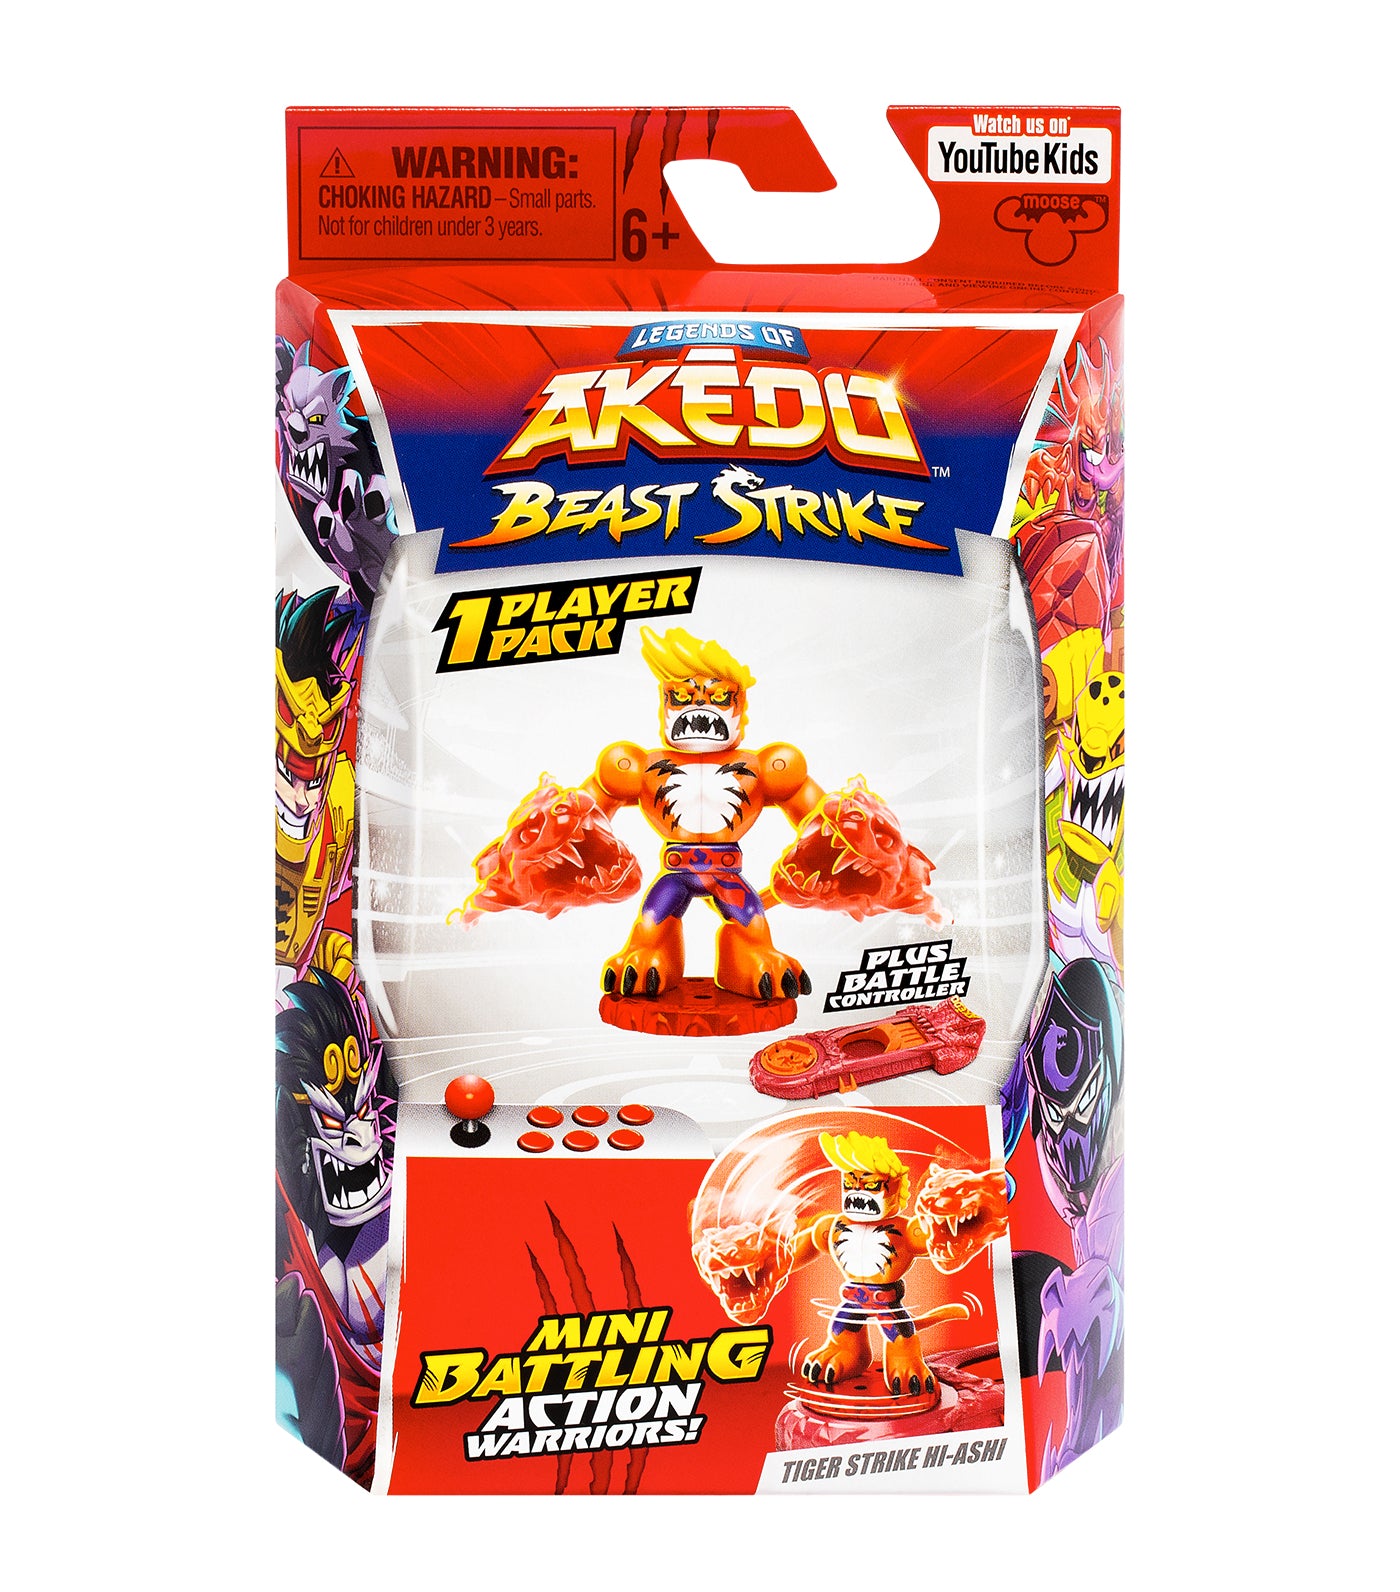 Tiger Strike Hi-Ashi - Single Pack